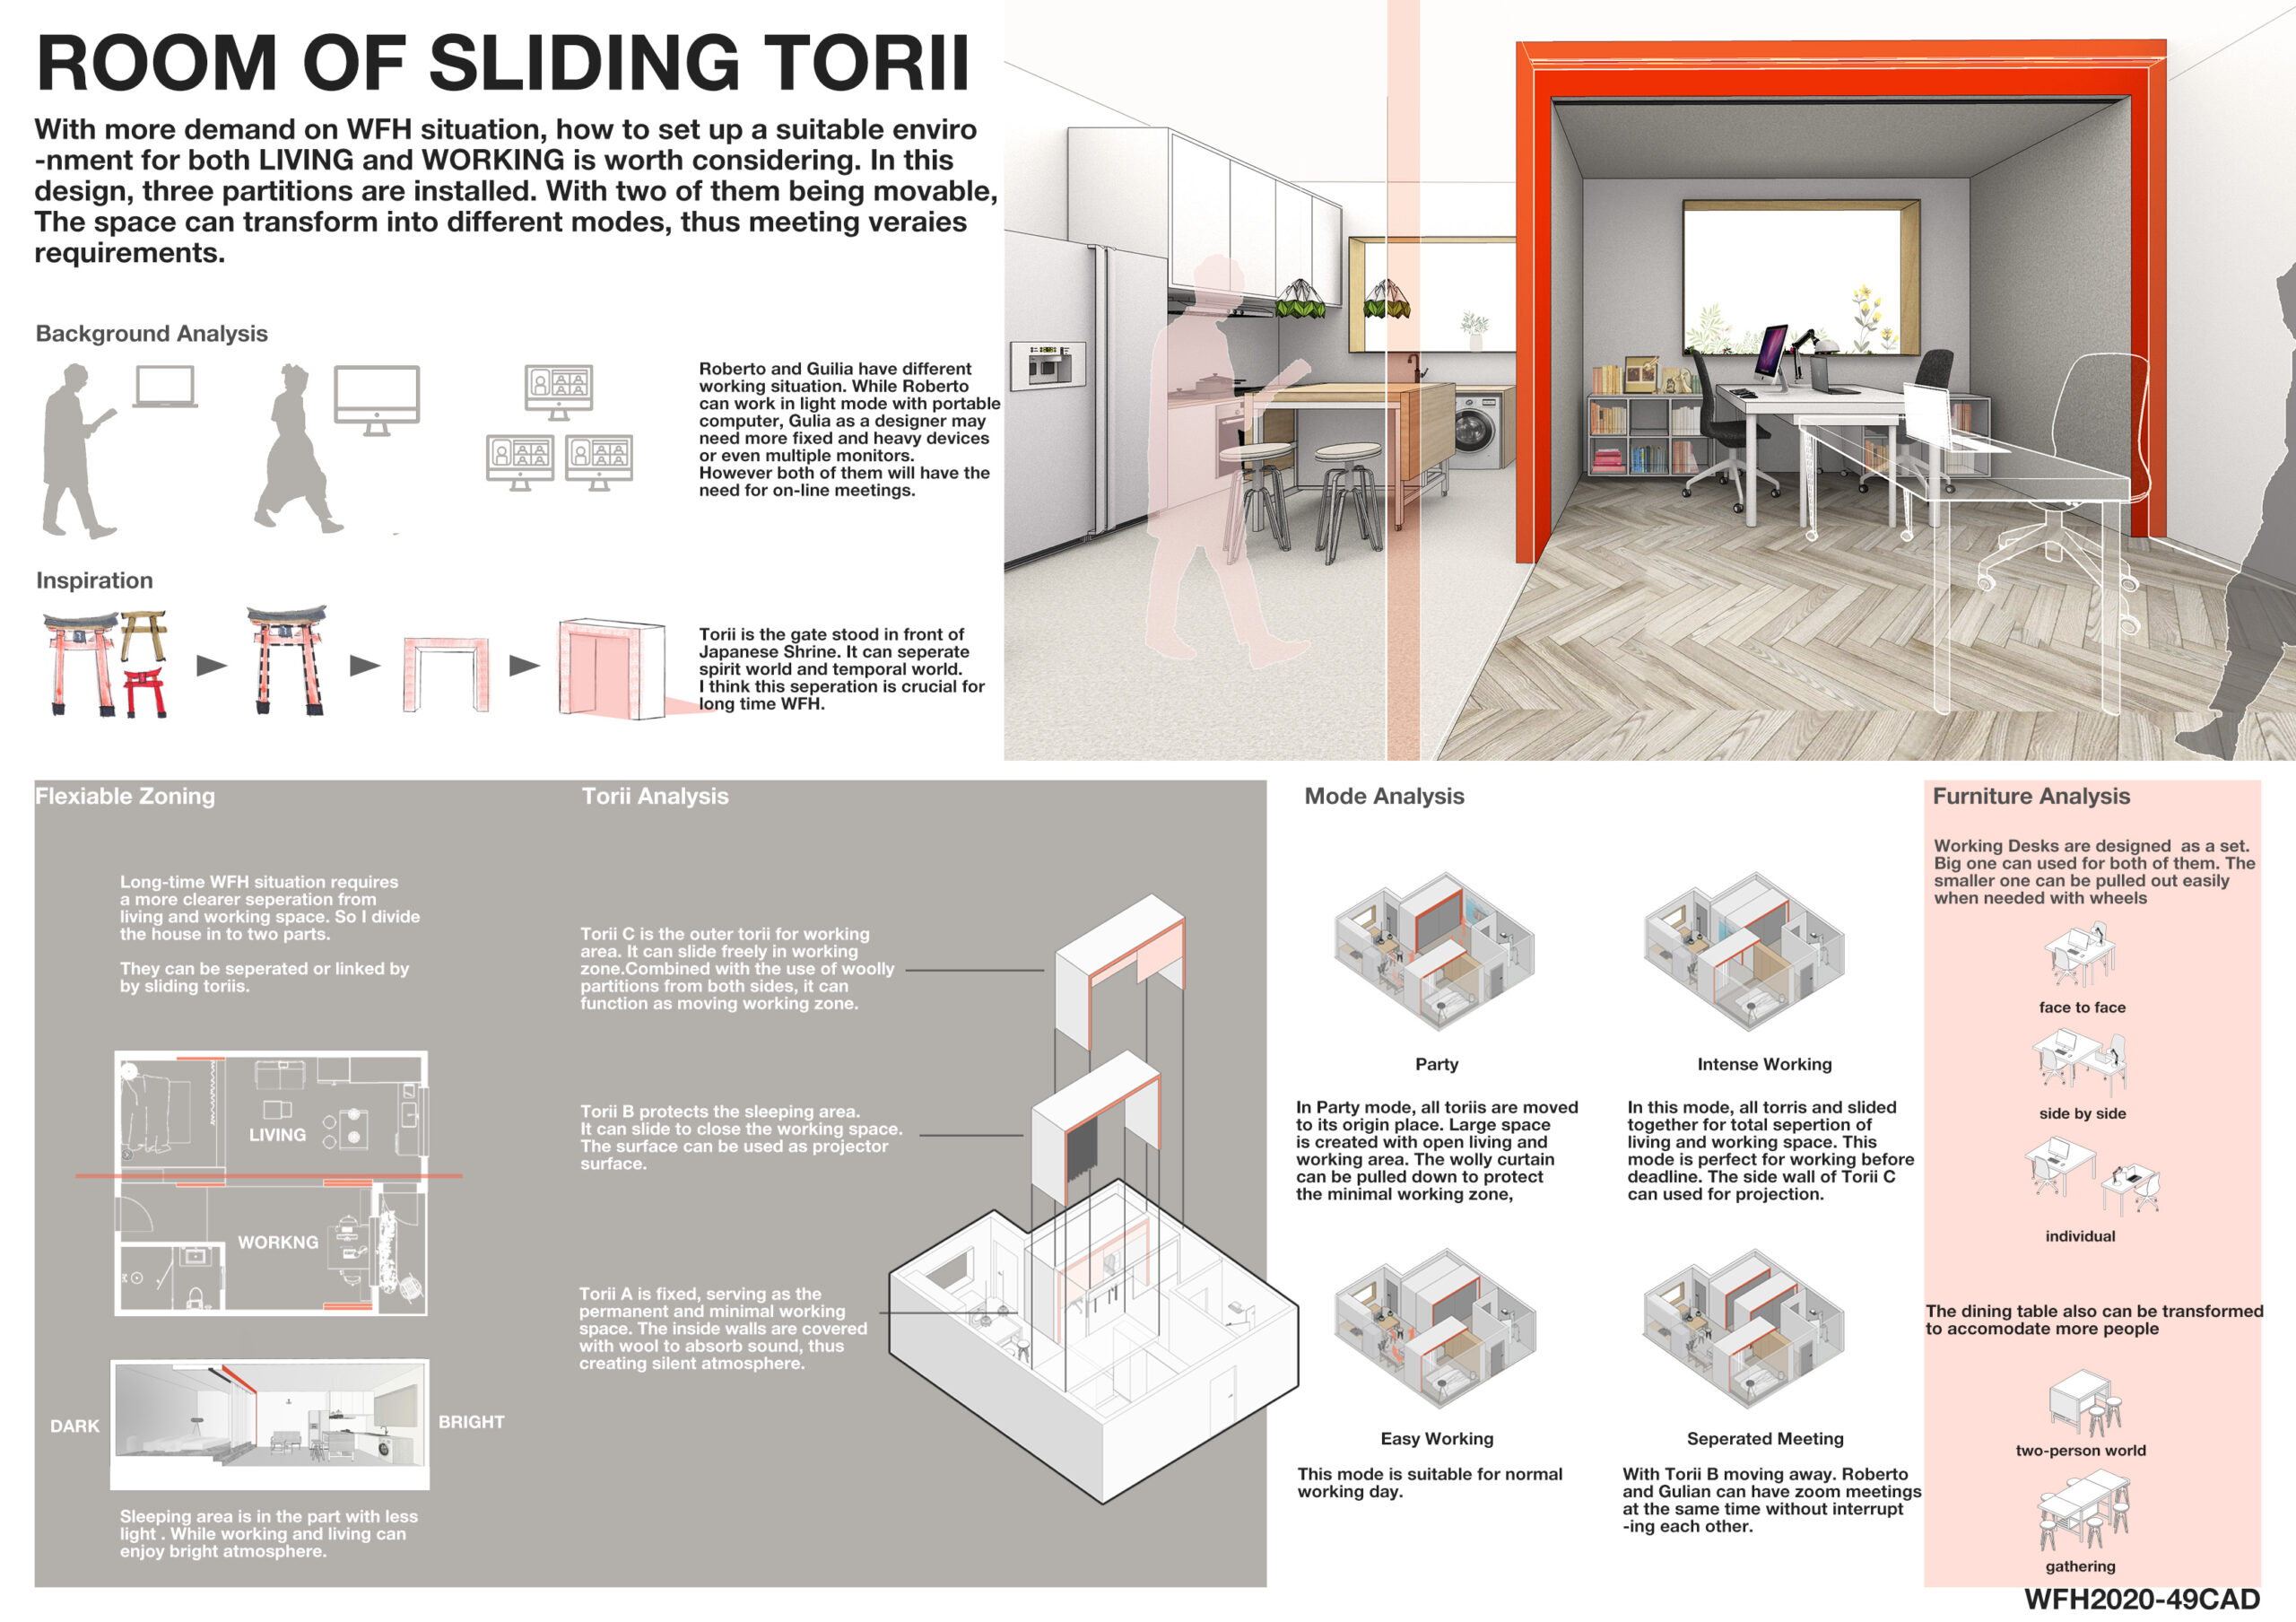 Room of Sliding Torii Board